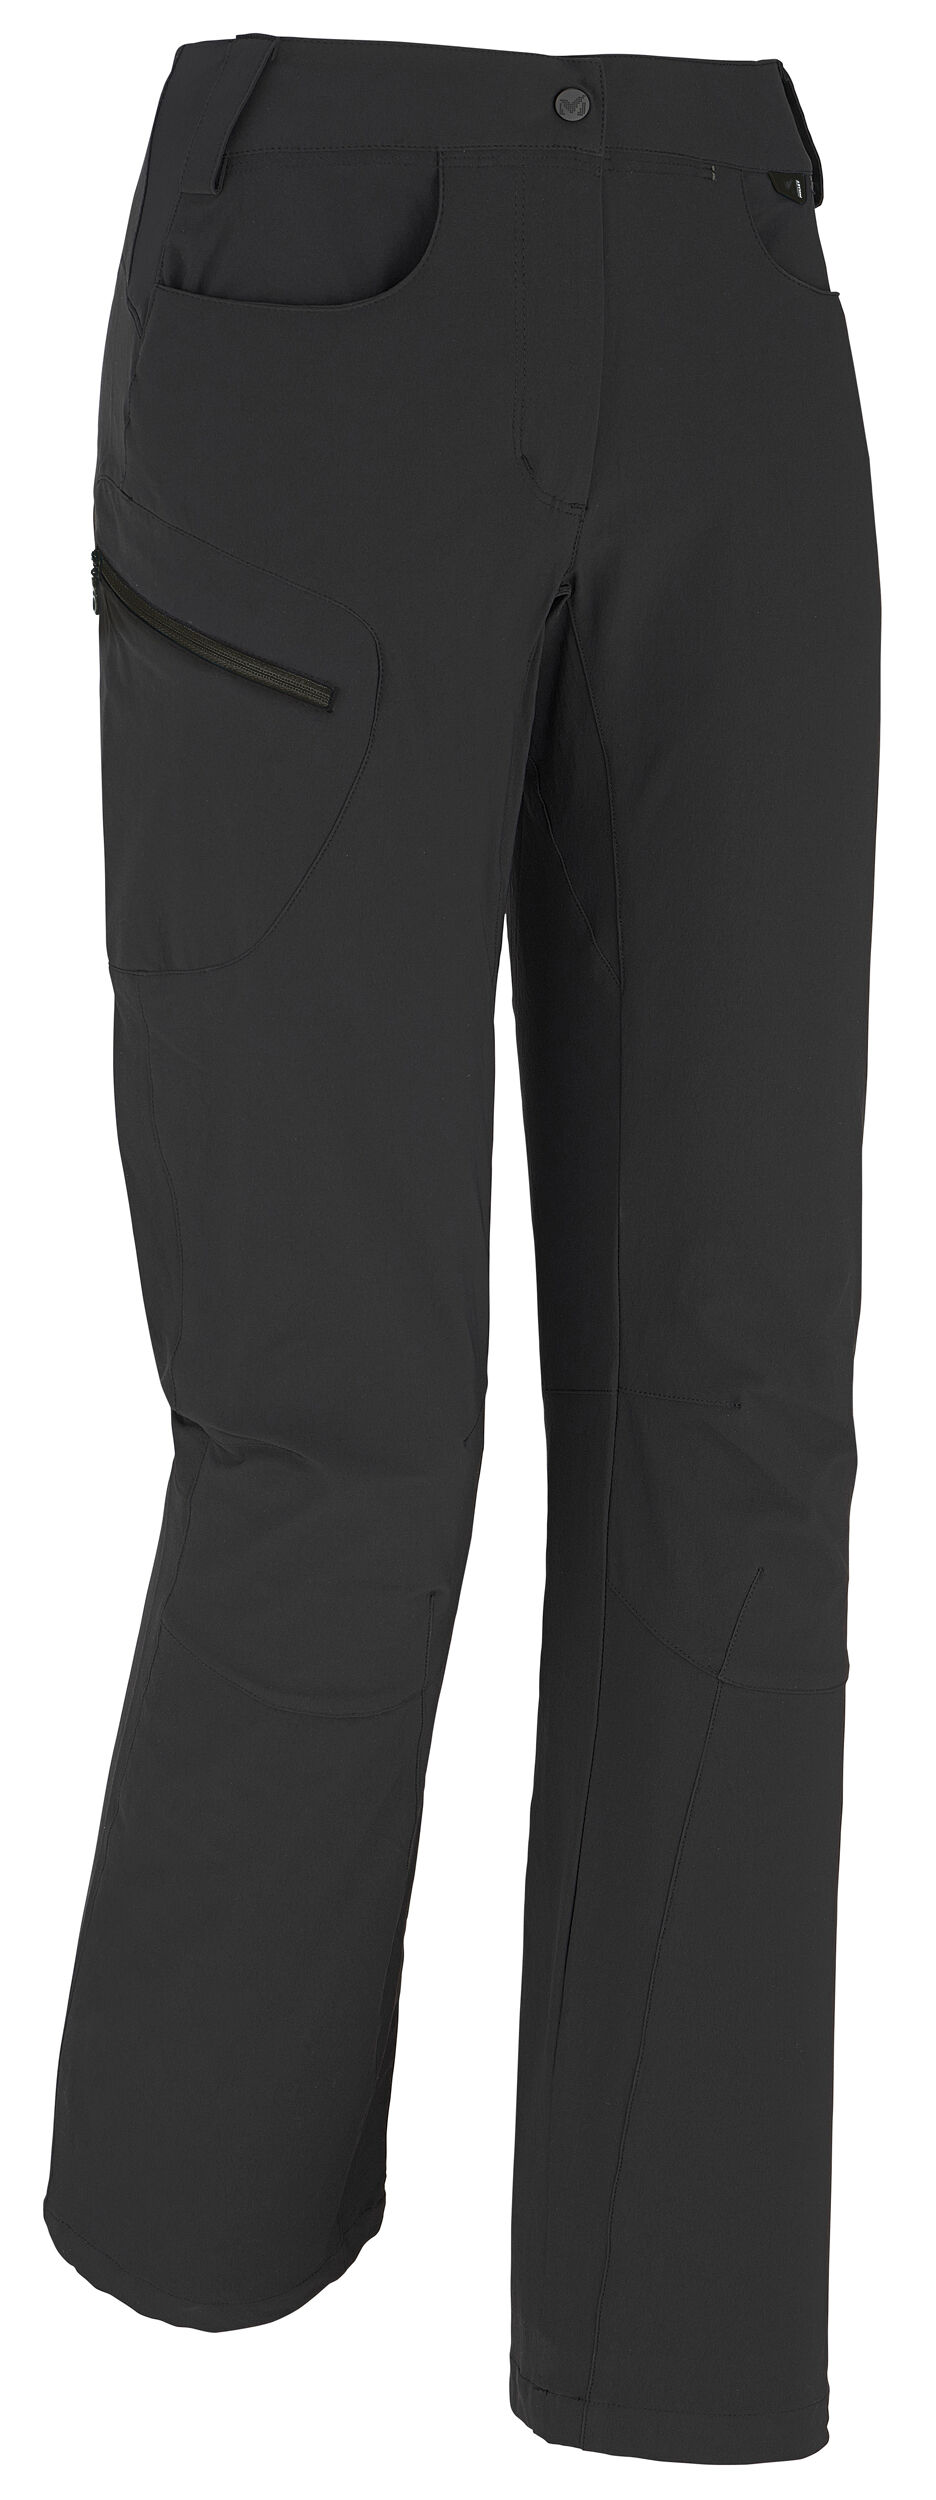 Millet - LD Trekker Stretch - Walking trousers - Women's